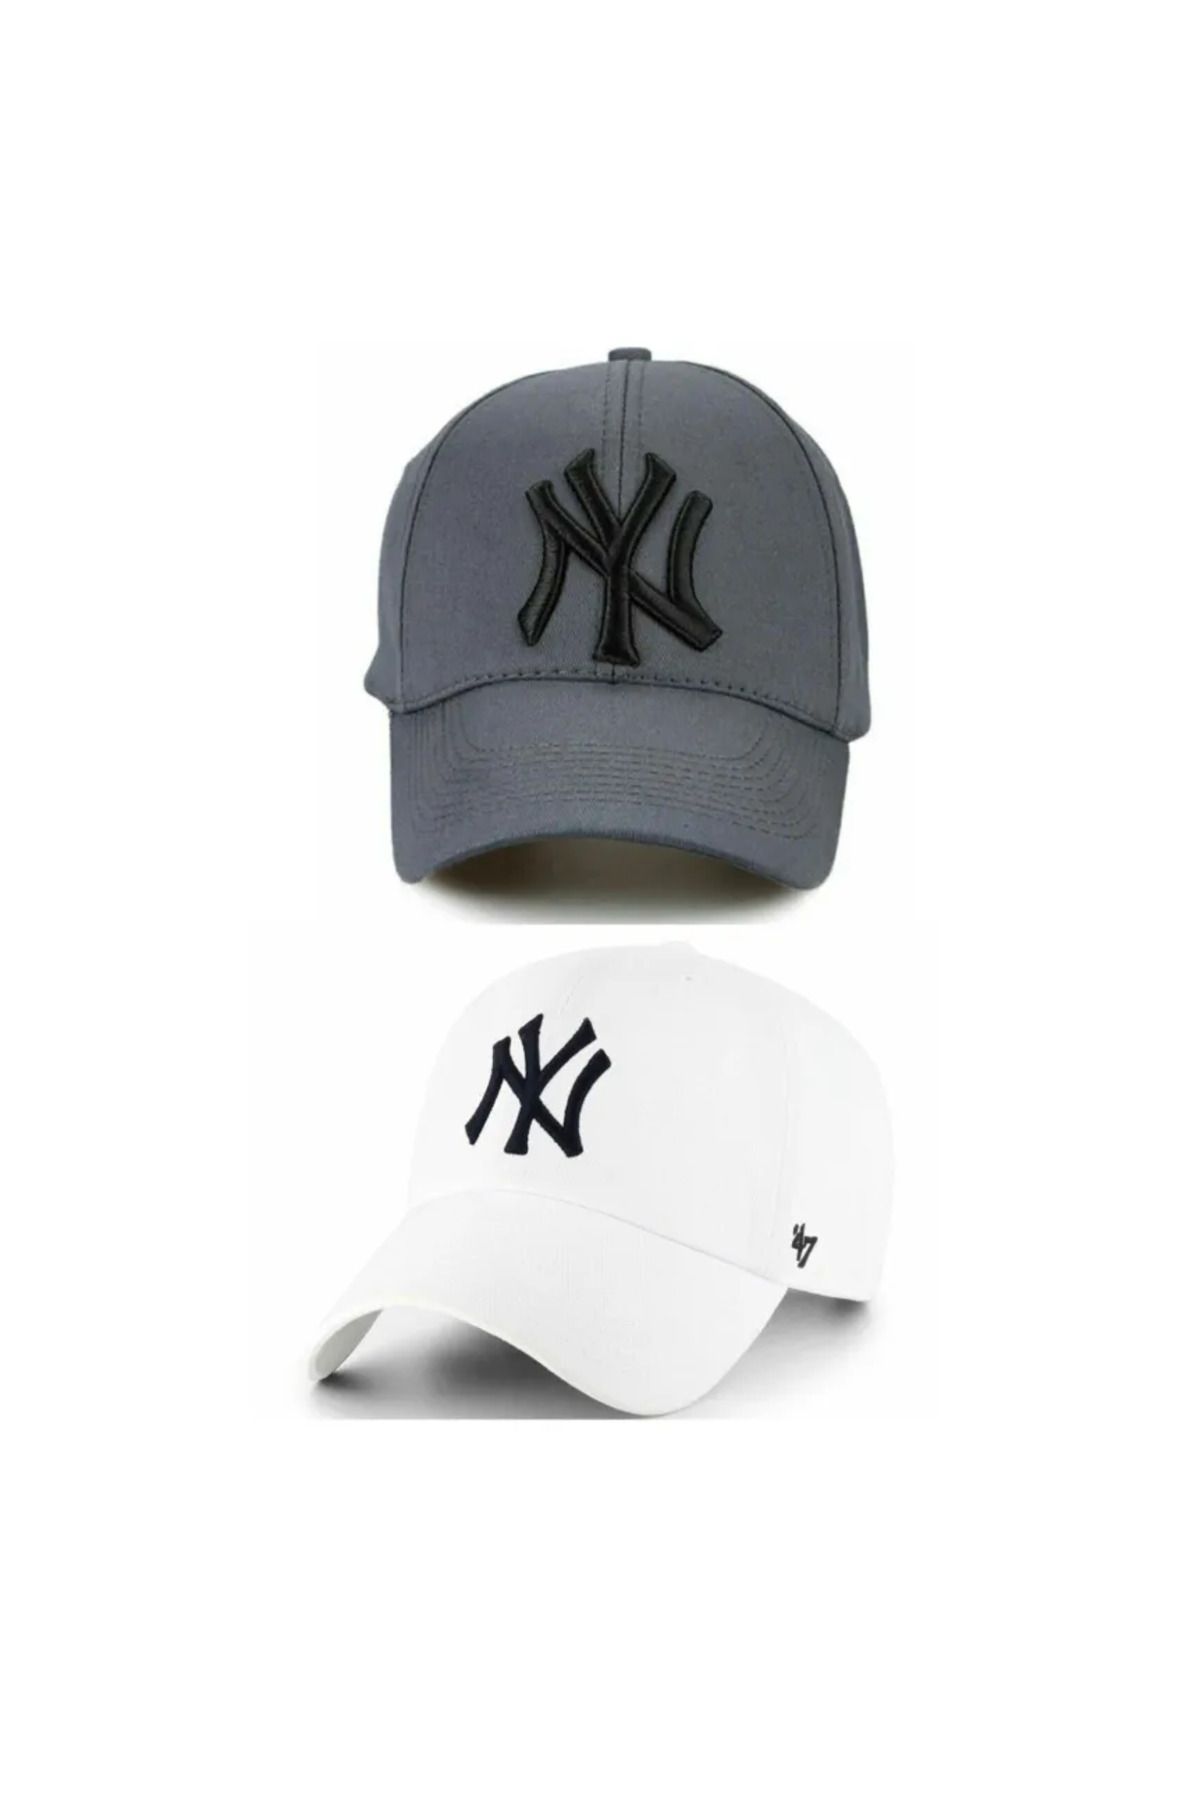 w white stars sports & wear Spor Ny Şapka Unisex 2'li Takım Arkası Cırtlı Ayarlanabilir ny şapkalar takımlı